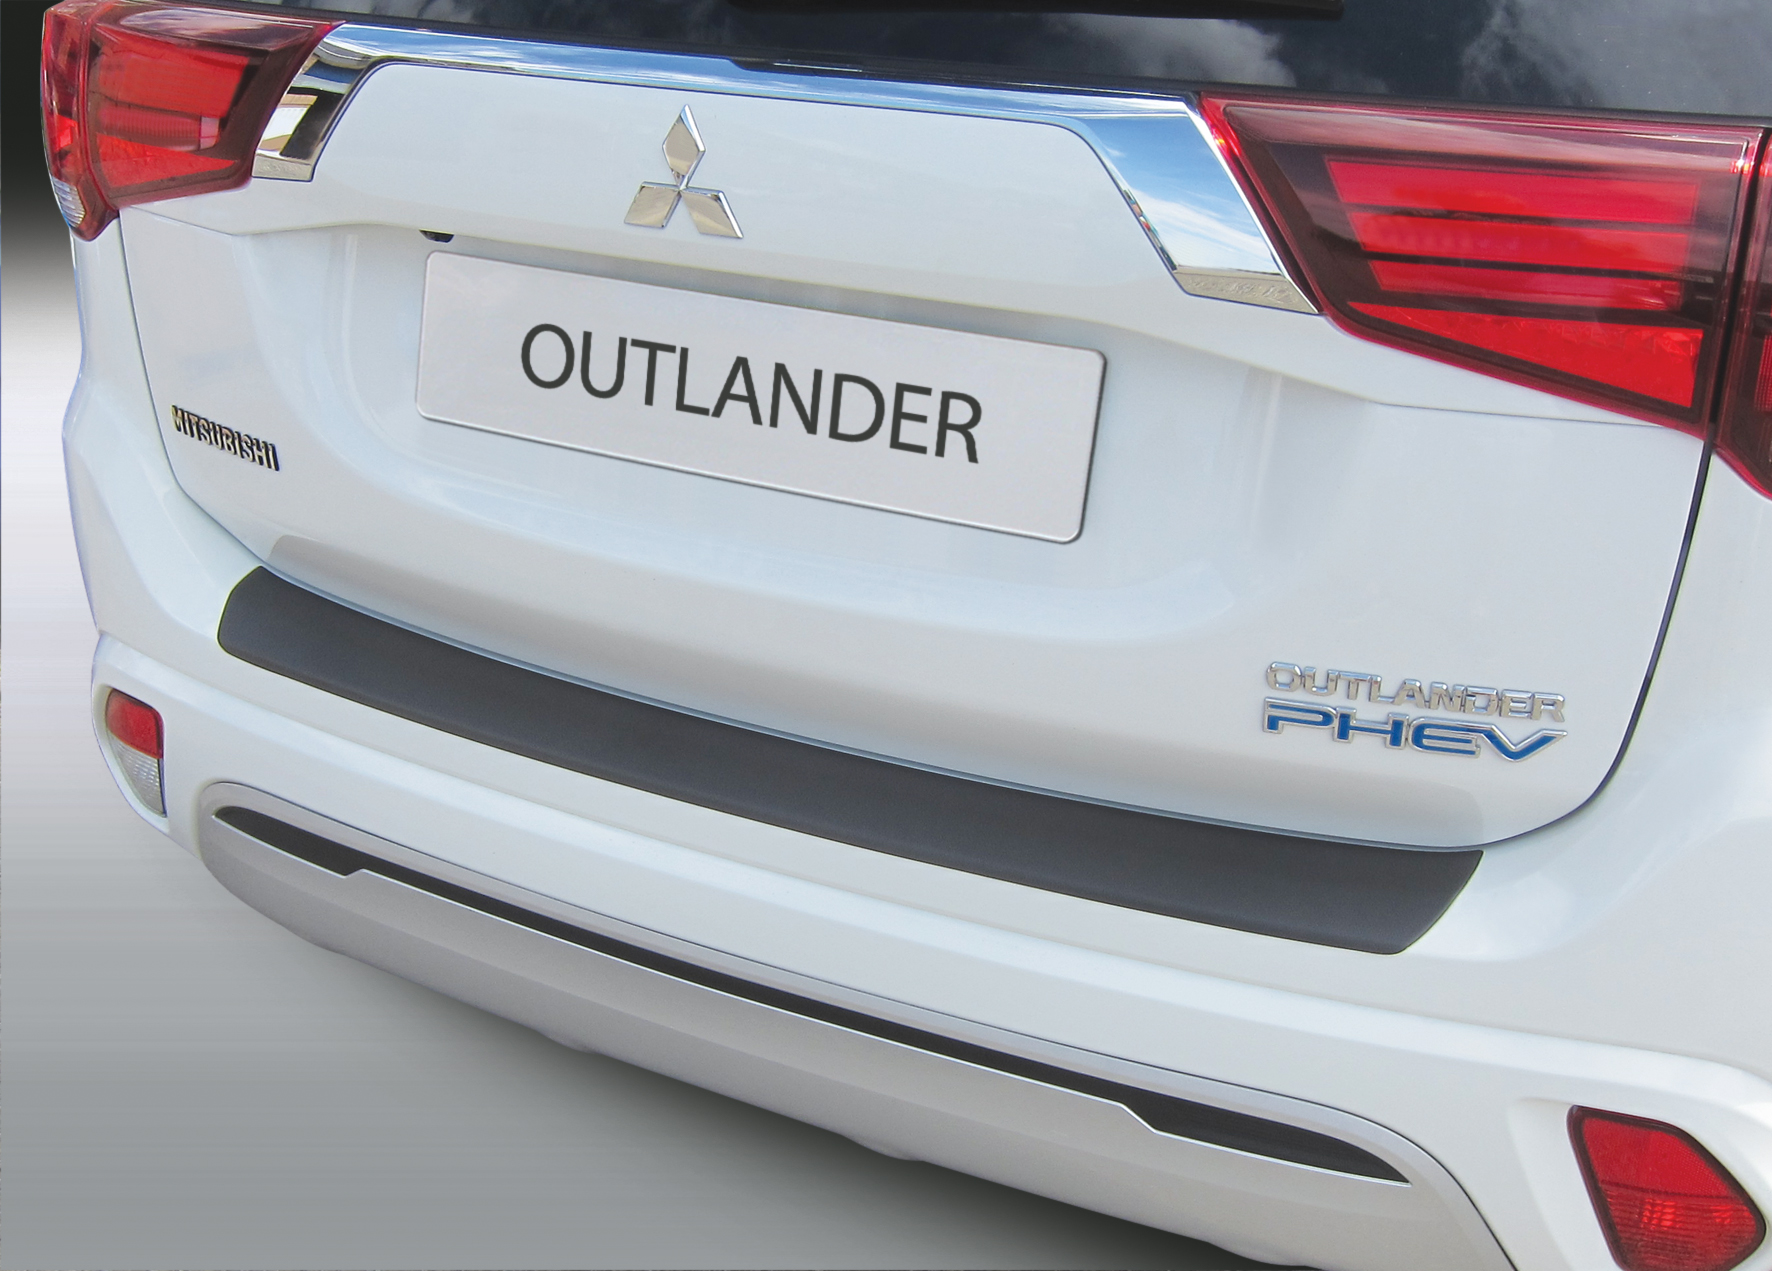 Ladekantenschutz für Mitsubishi Outlander - Schutz für die Ladekante Ihres  Fahrzeuges